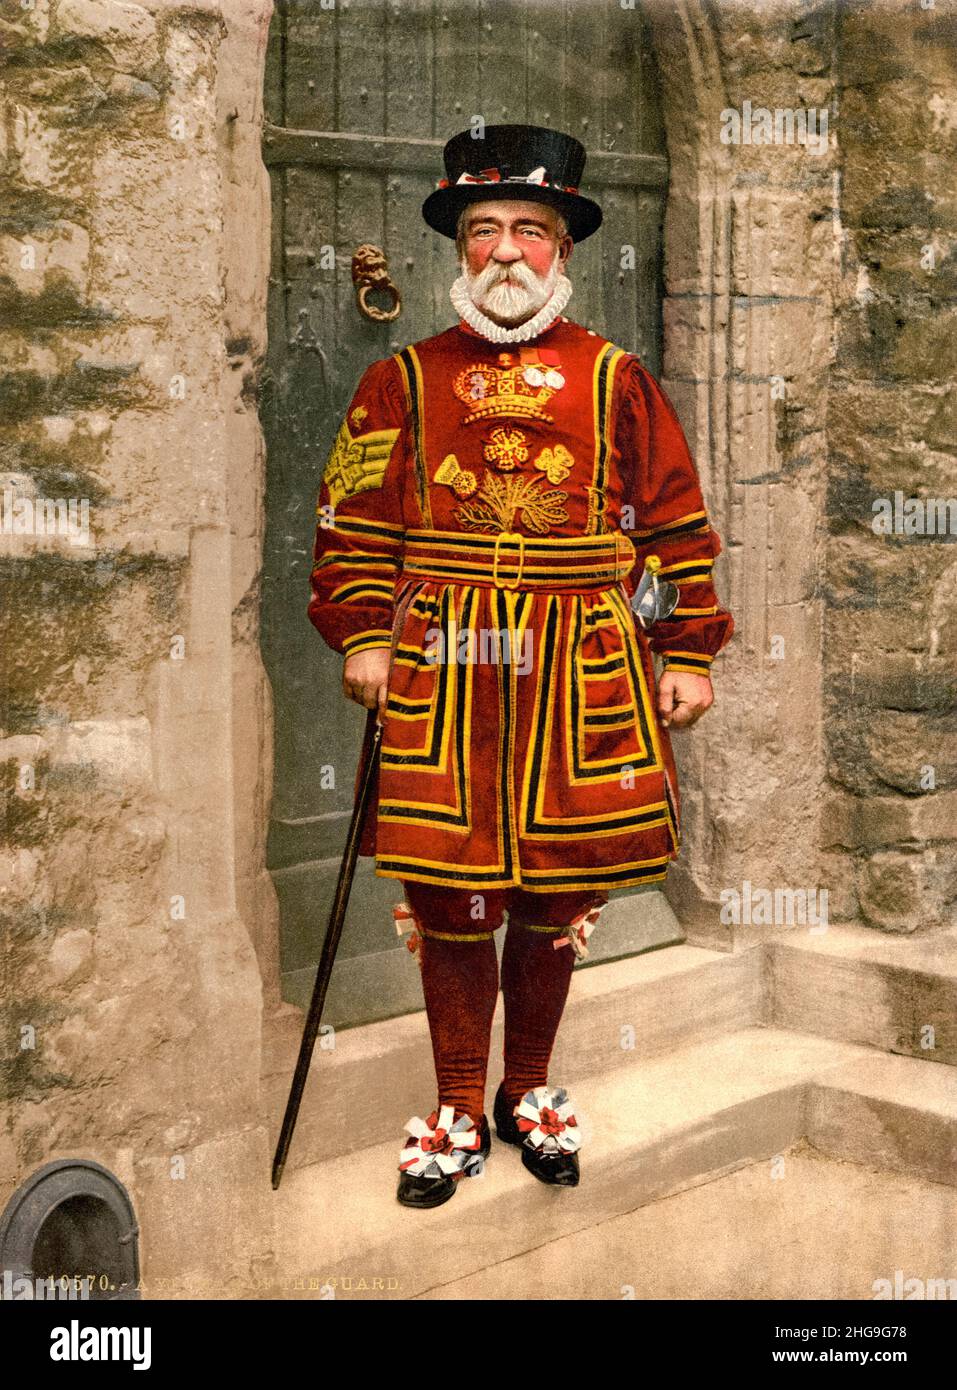 British Yeoman Warder (Beefeater) in Tudor state Dress, (Ceremonial Military Uniform), fotografia colorata di Detroit Publishing Co, 1890-1900 Foto Stock